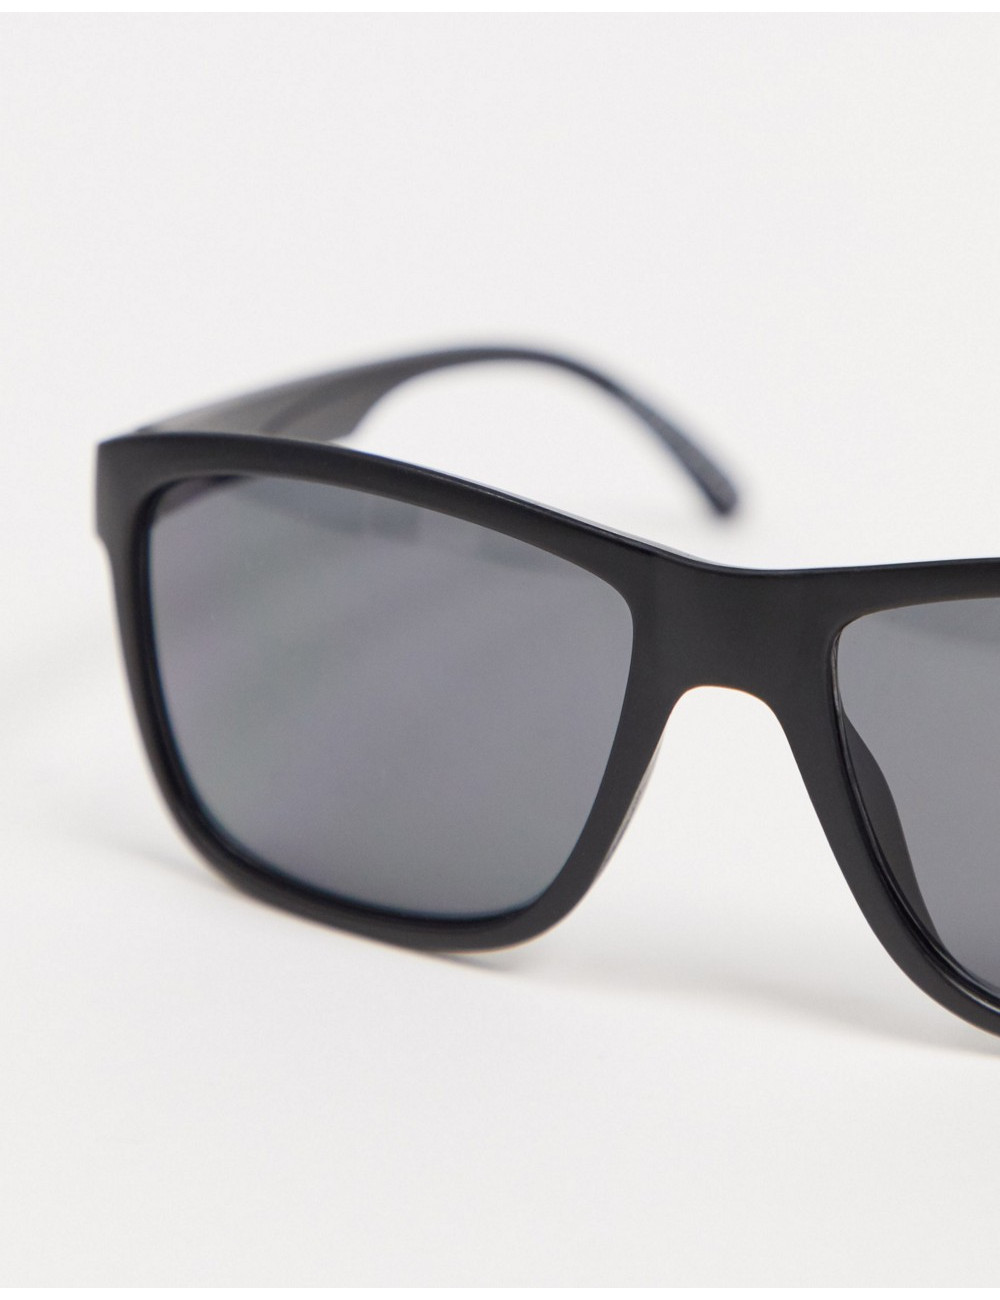 SVNX square sunglasses in...